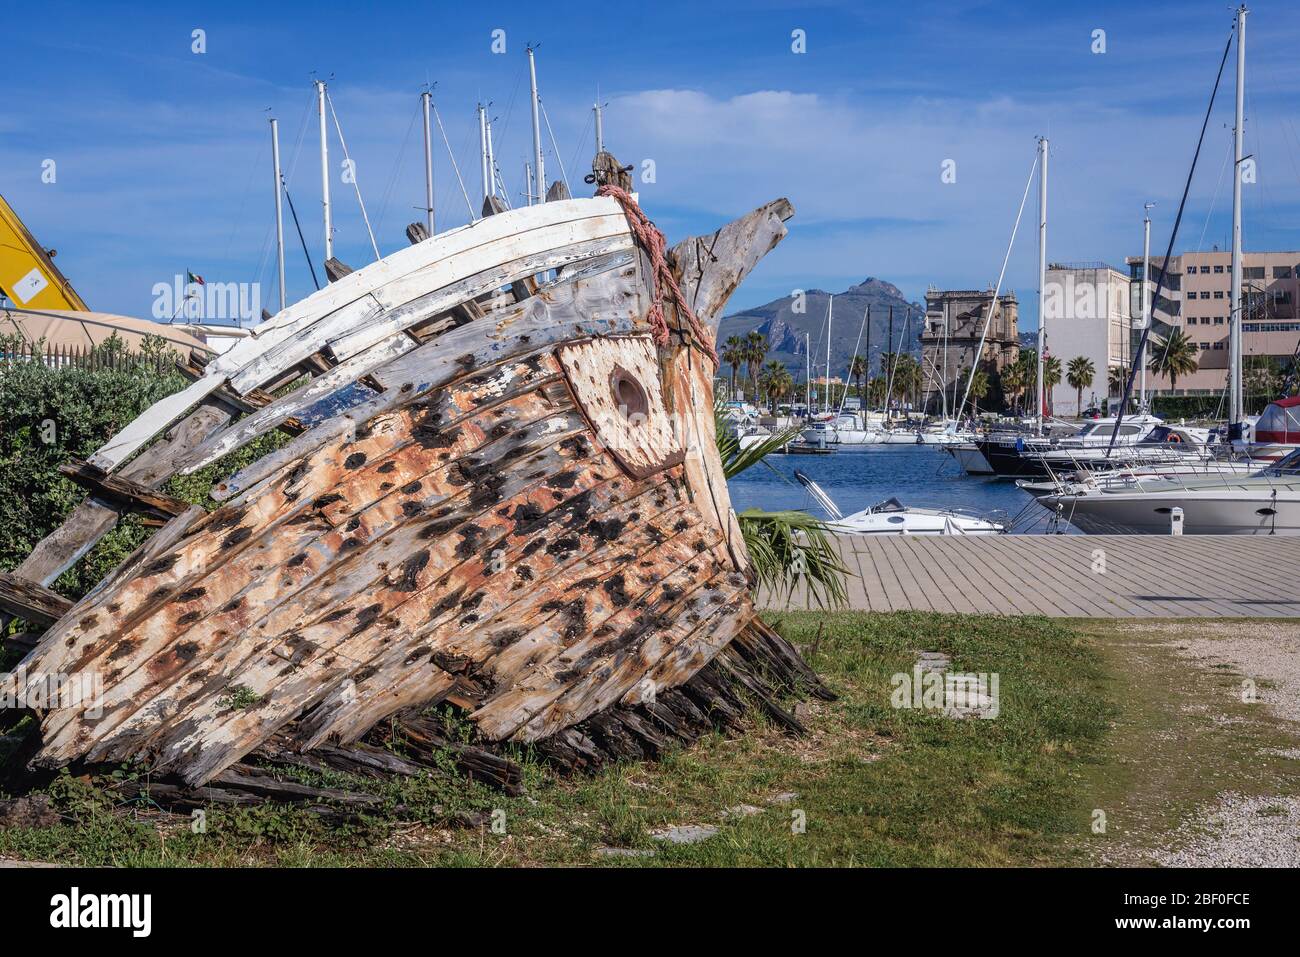 Vestiges de vieux bateaux dans la région de la Cala de Port de Palerme ville du sud de l'Italie, la capitale de la région autonome de Sicile Banque D'Images